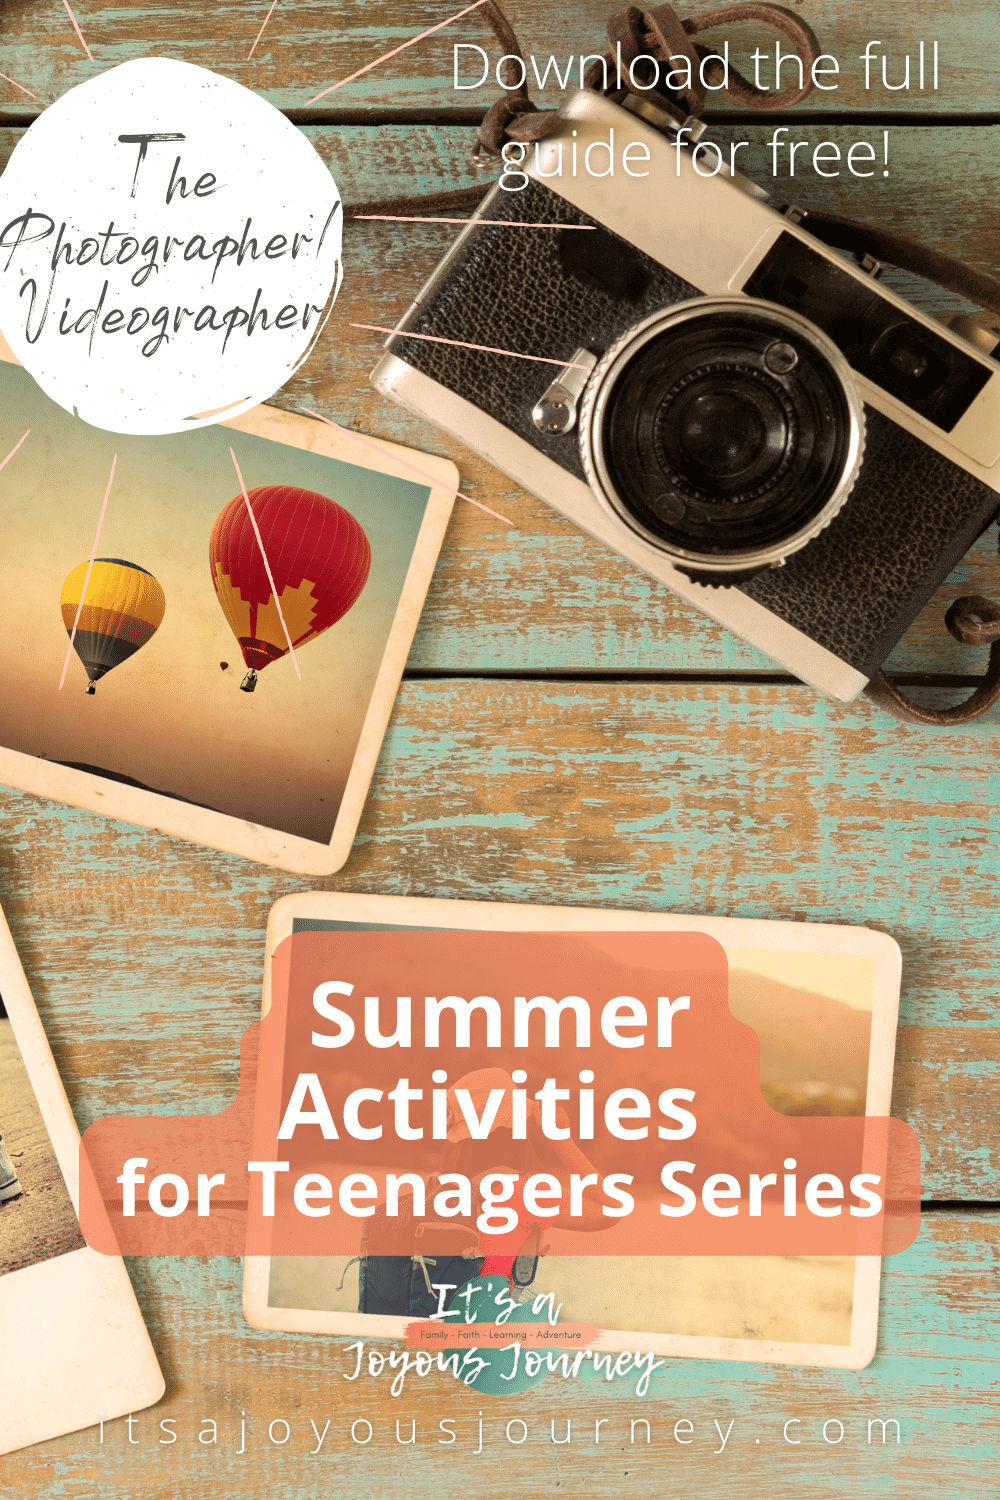 Summer Activities for Teenagers Series